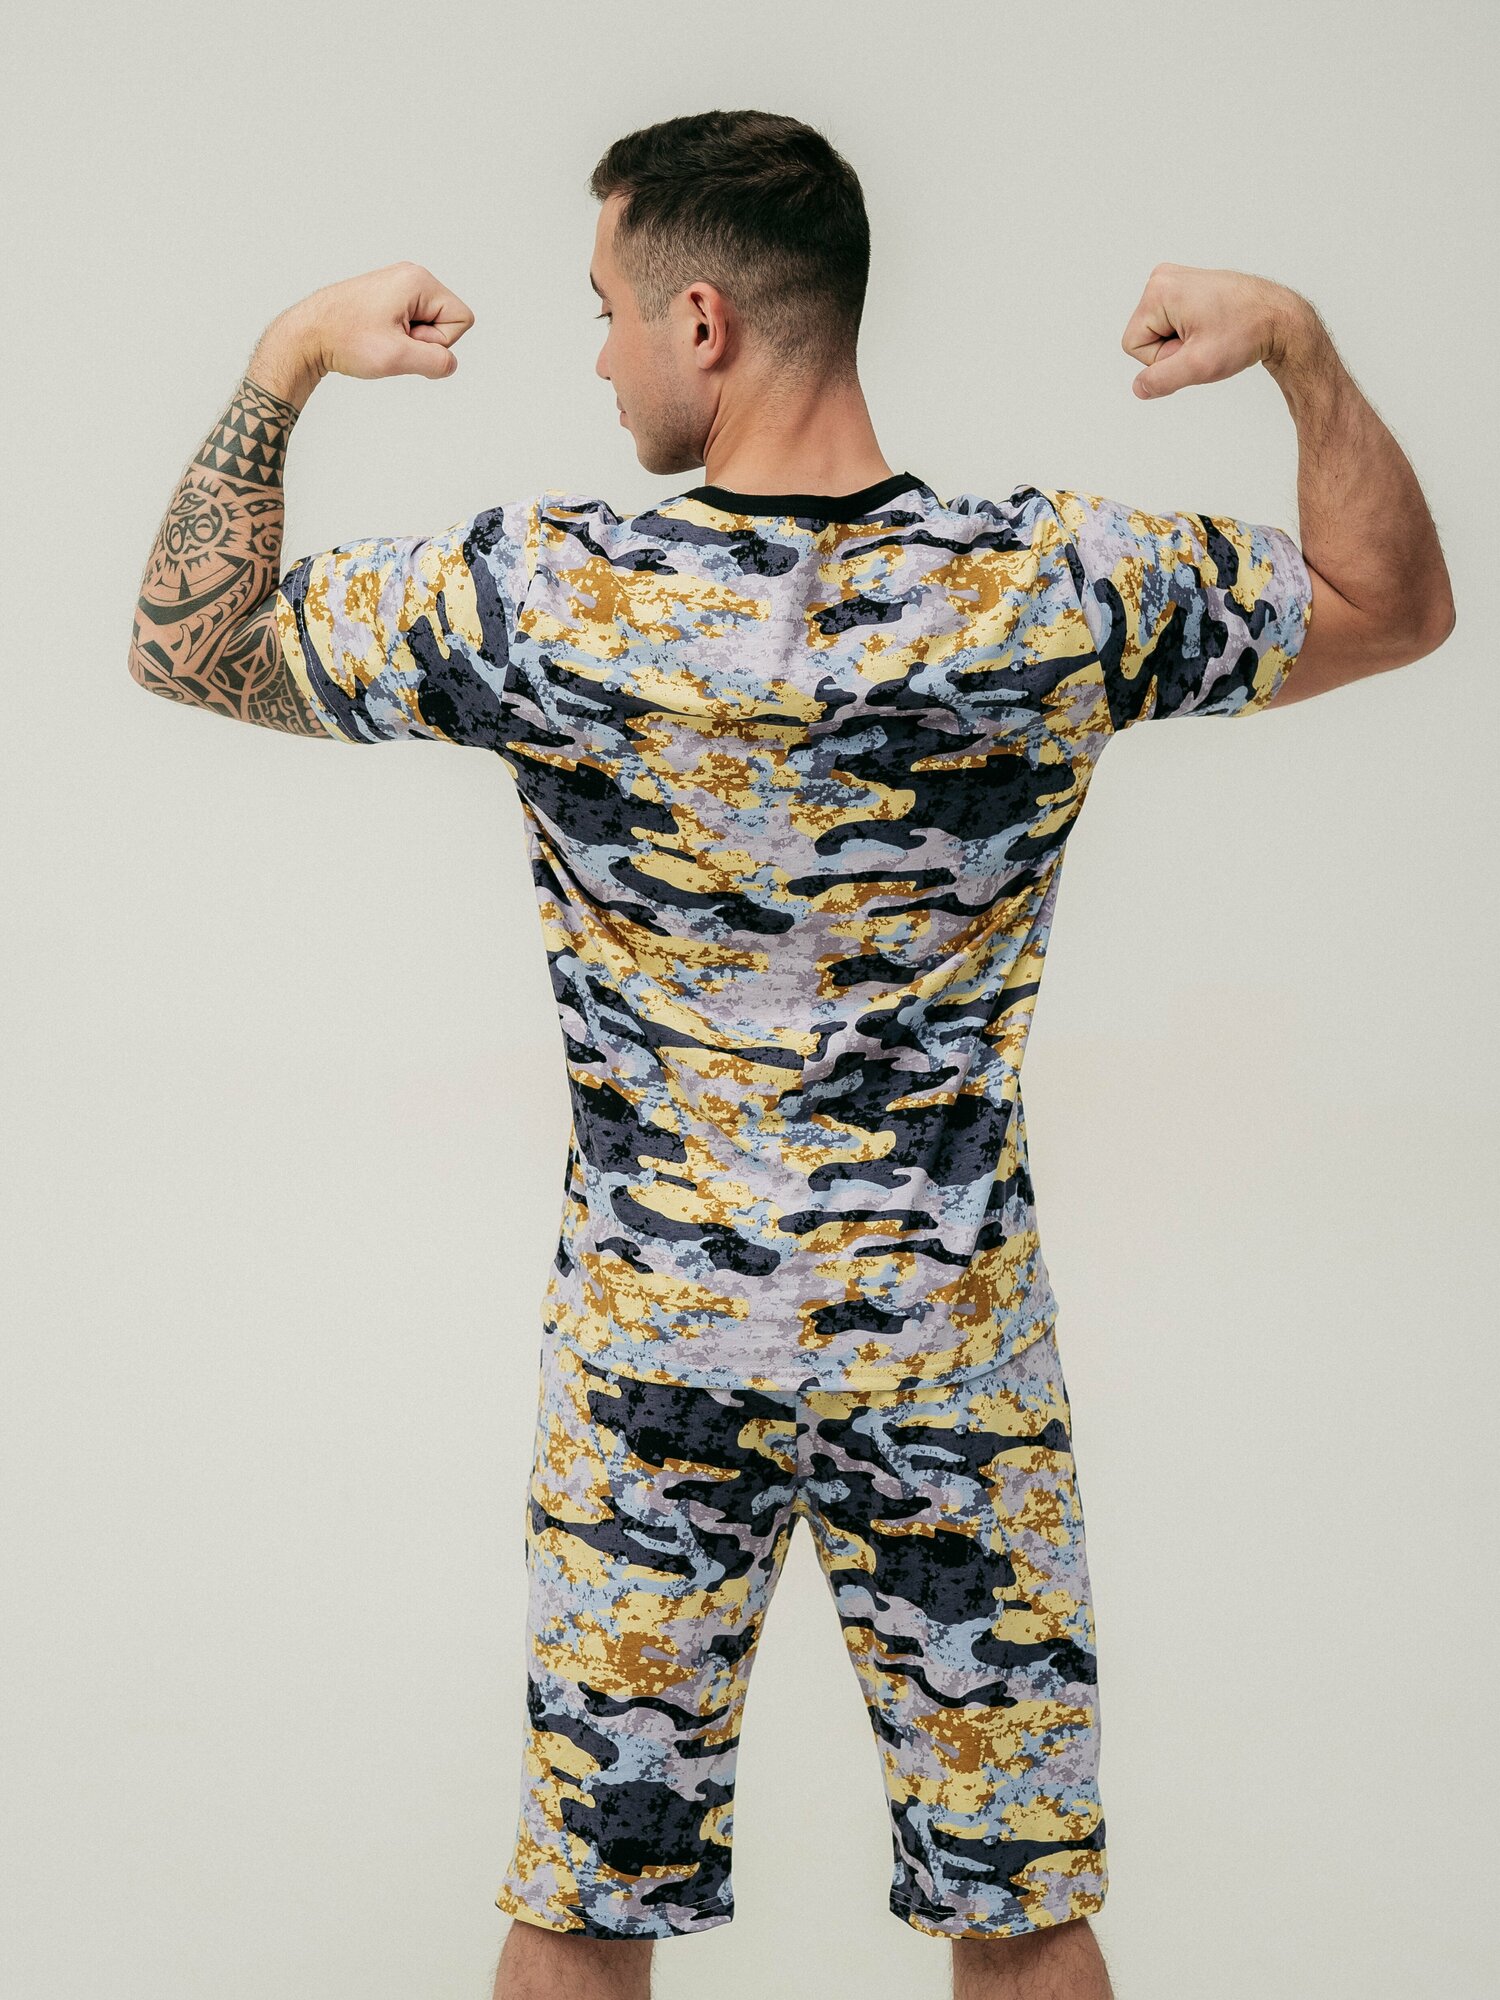 Мужская пижама, мужской пижамный комплект ARISTARHOV, Футболка + Шорты, графит, бежевый, размер 58 - фотография № 18